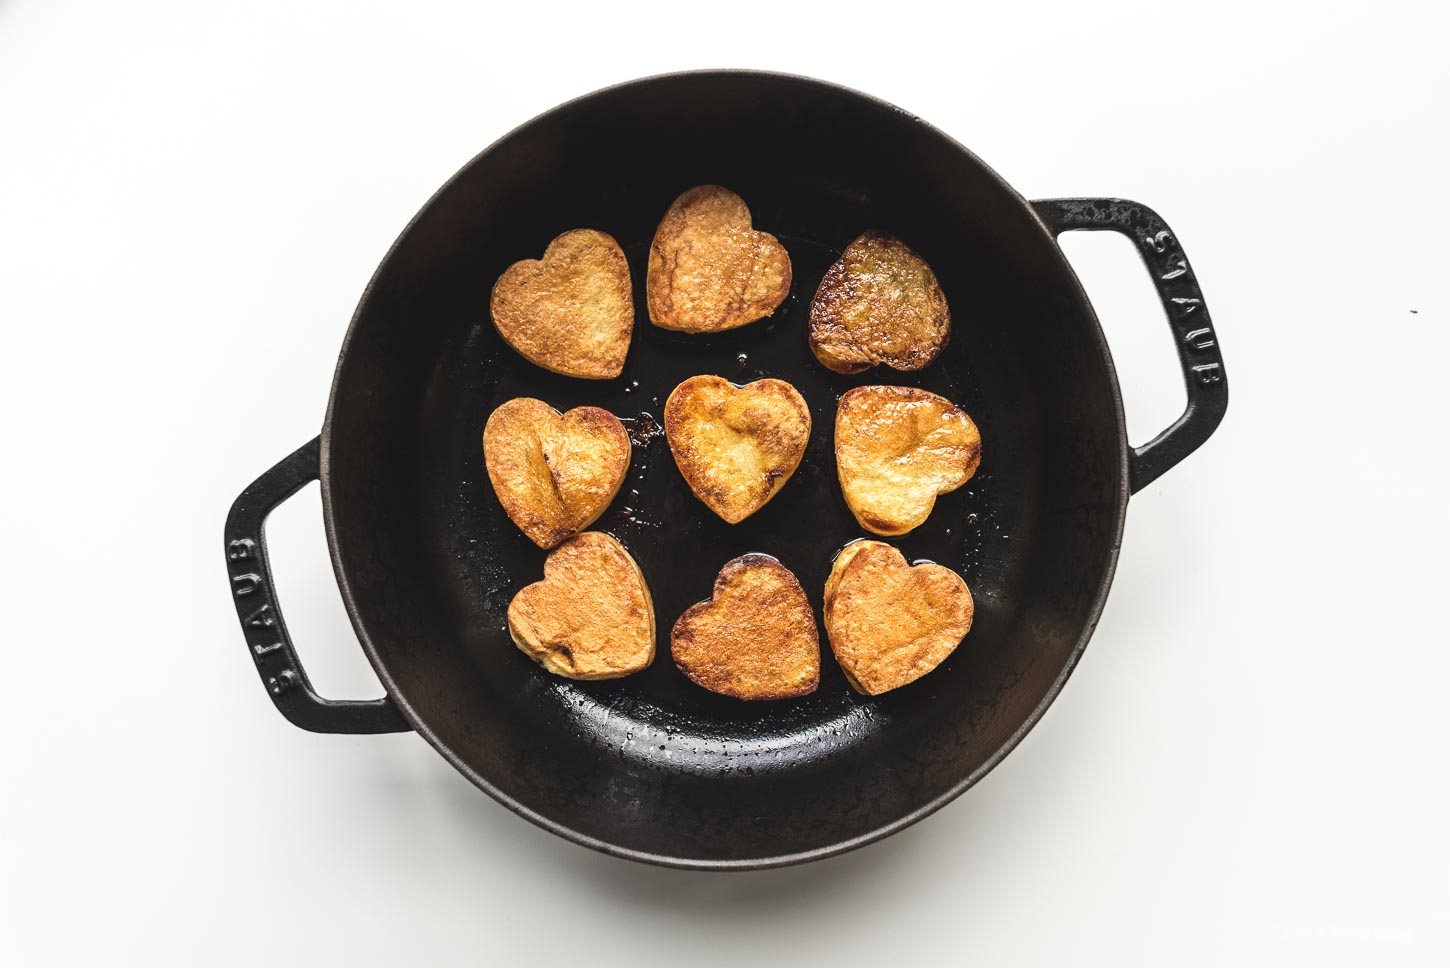 How to Make Heart Shaped Roasted Potatoes | www.iamafoodblog.com